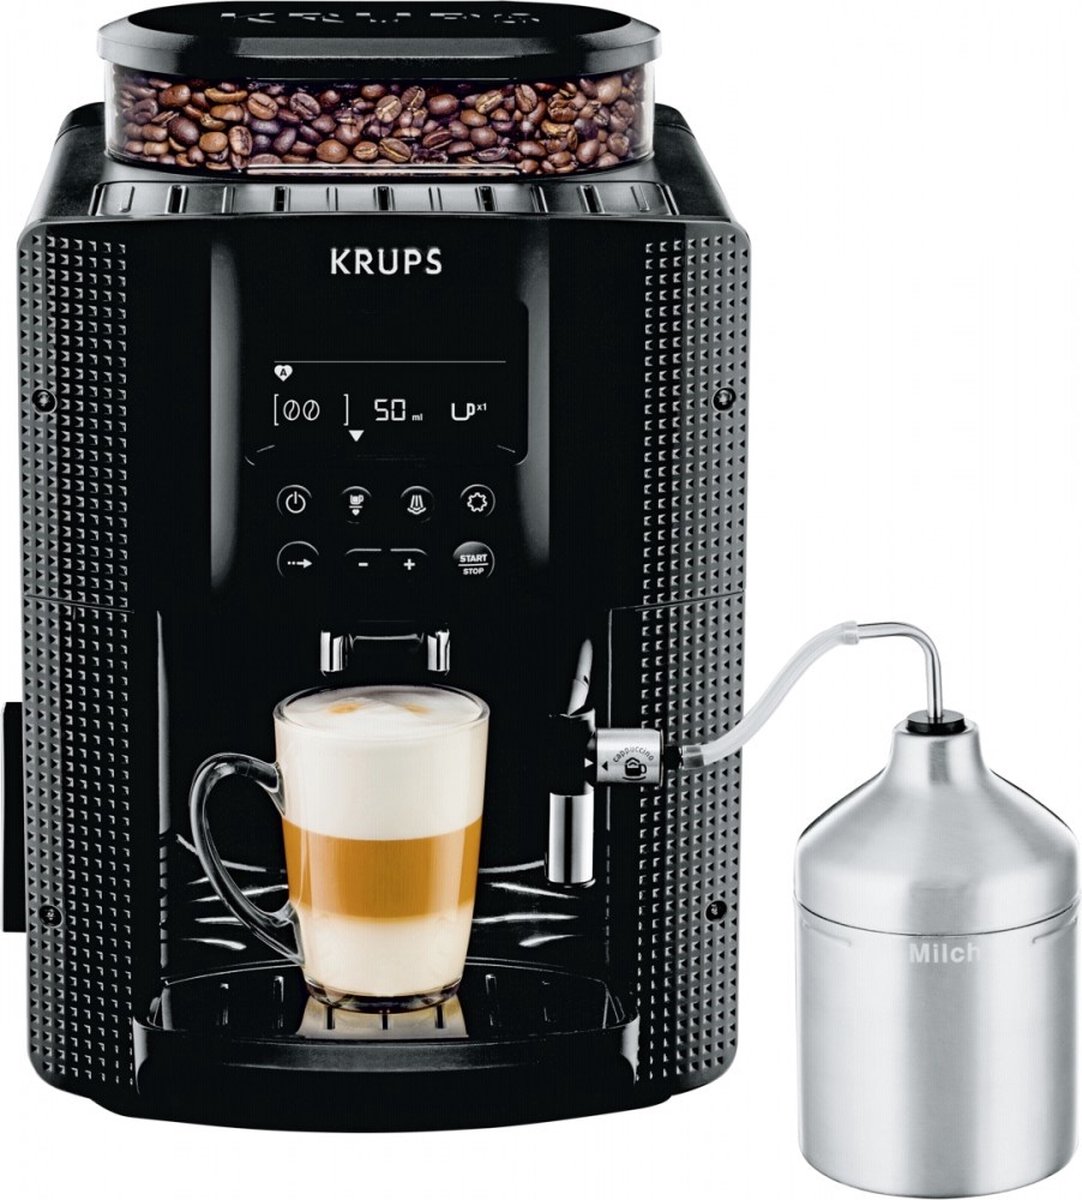 Cette machine à café Krups à prix réduit attire de nombreux